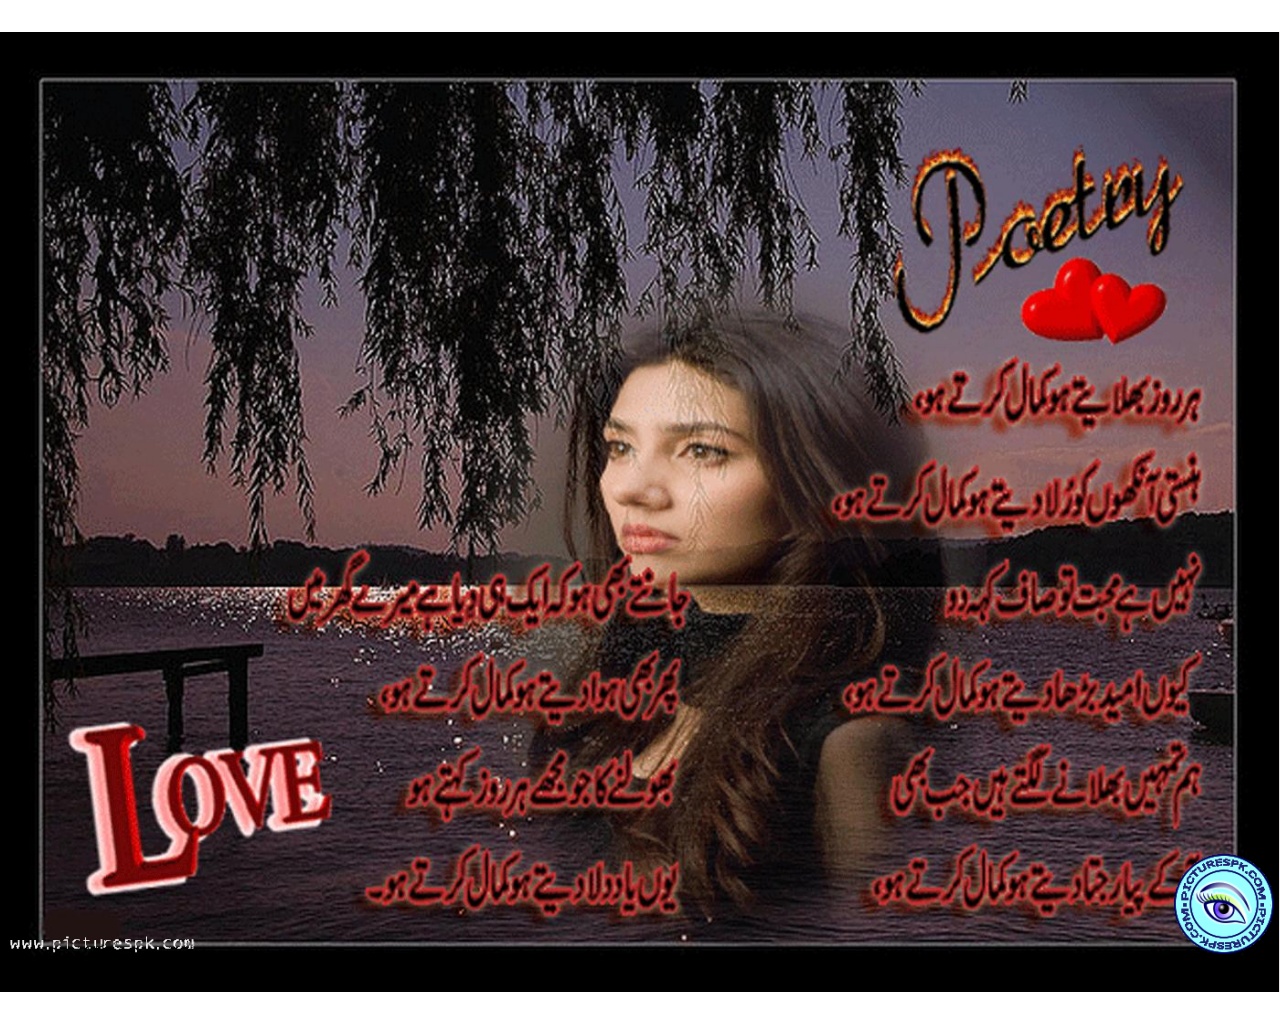 Sad Urdu poetry, Ghazal, Wallpaper, SMS